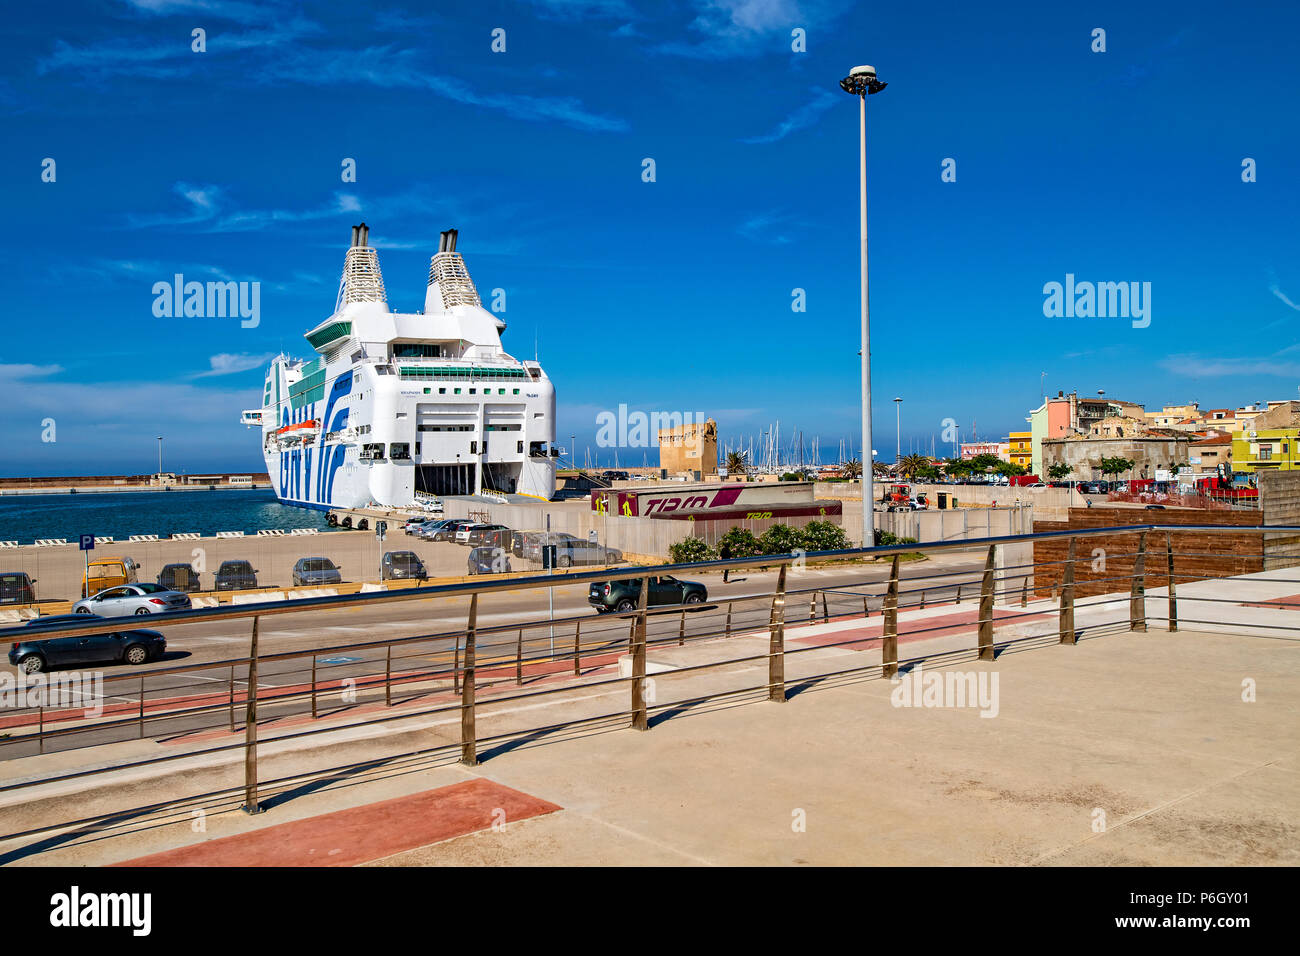 Italia Cerdeña Porto Torres - El puerto Fotografía de stock - Alamy